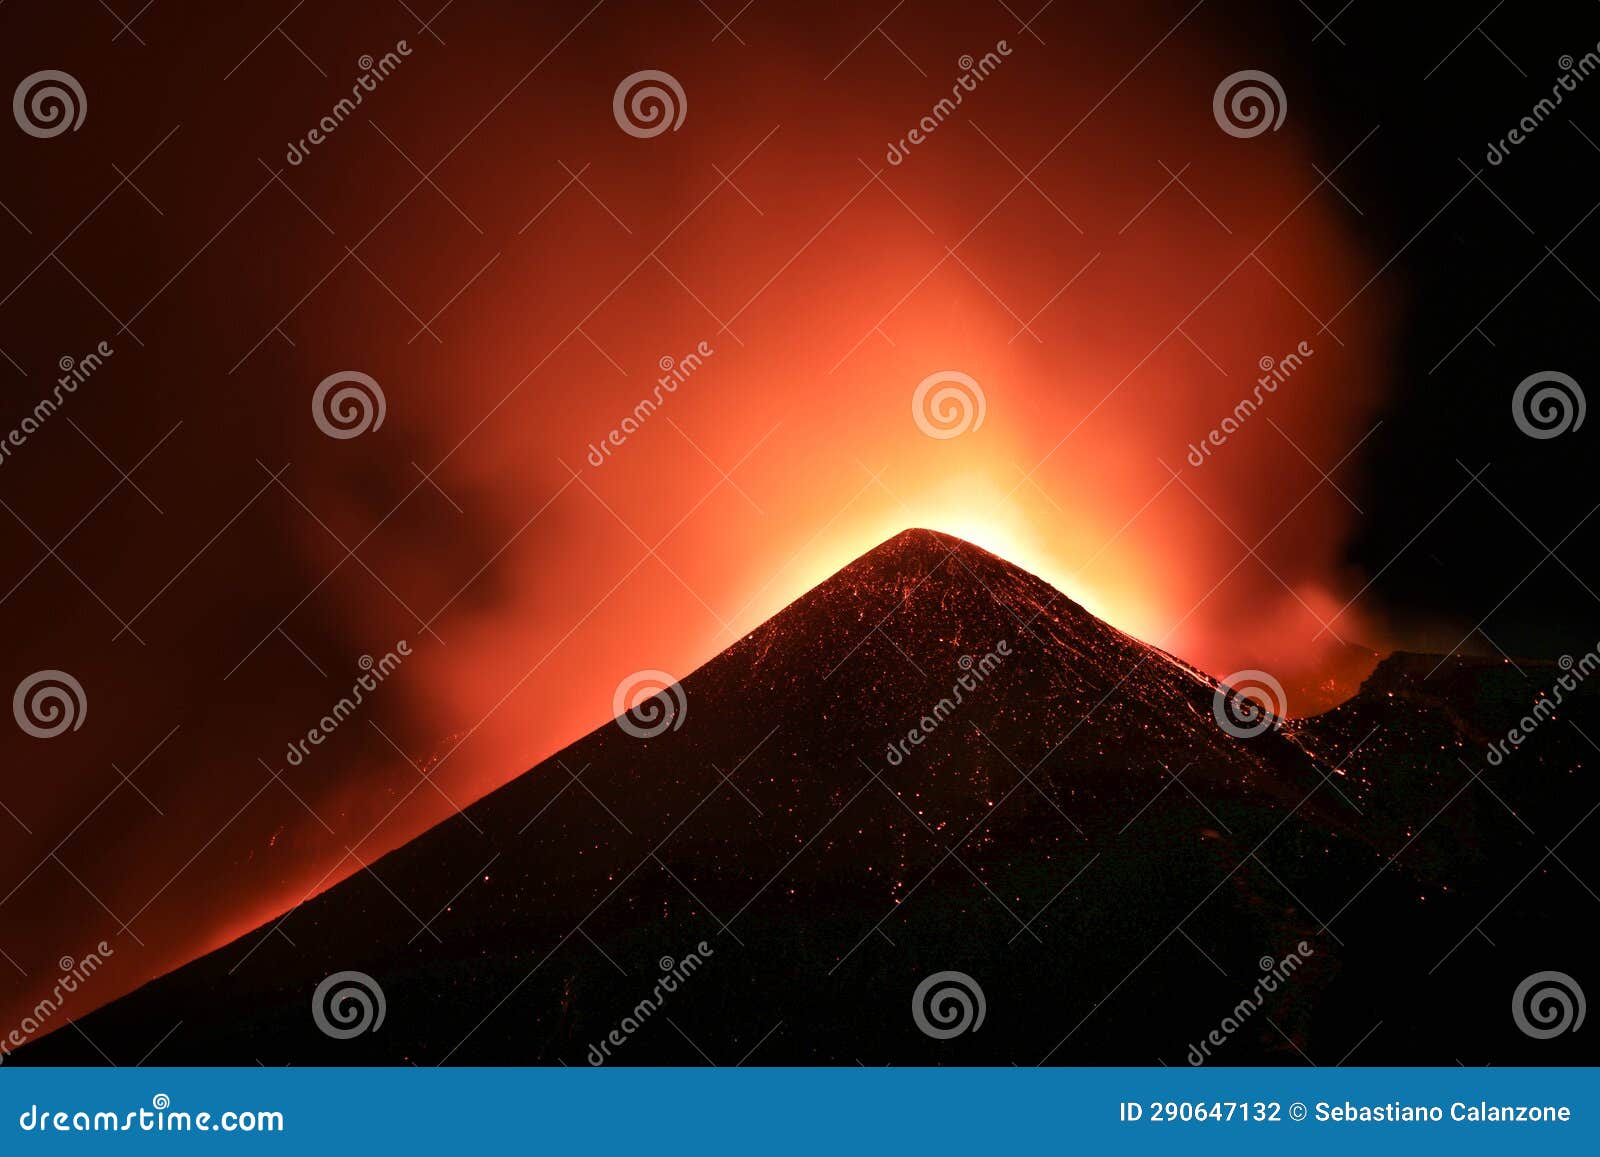 cratere etna in eruzione in primo piano durante suggestiva notte con lava incandescente ed emissione di cenere e fumo